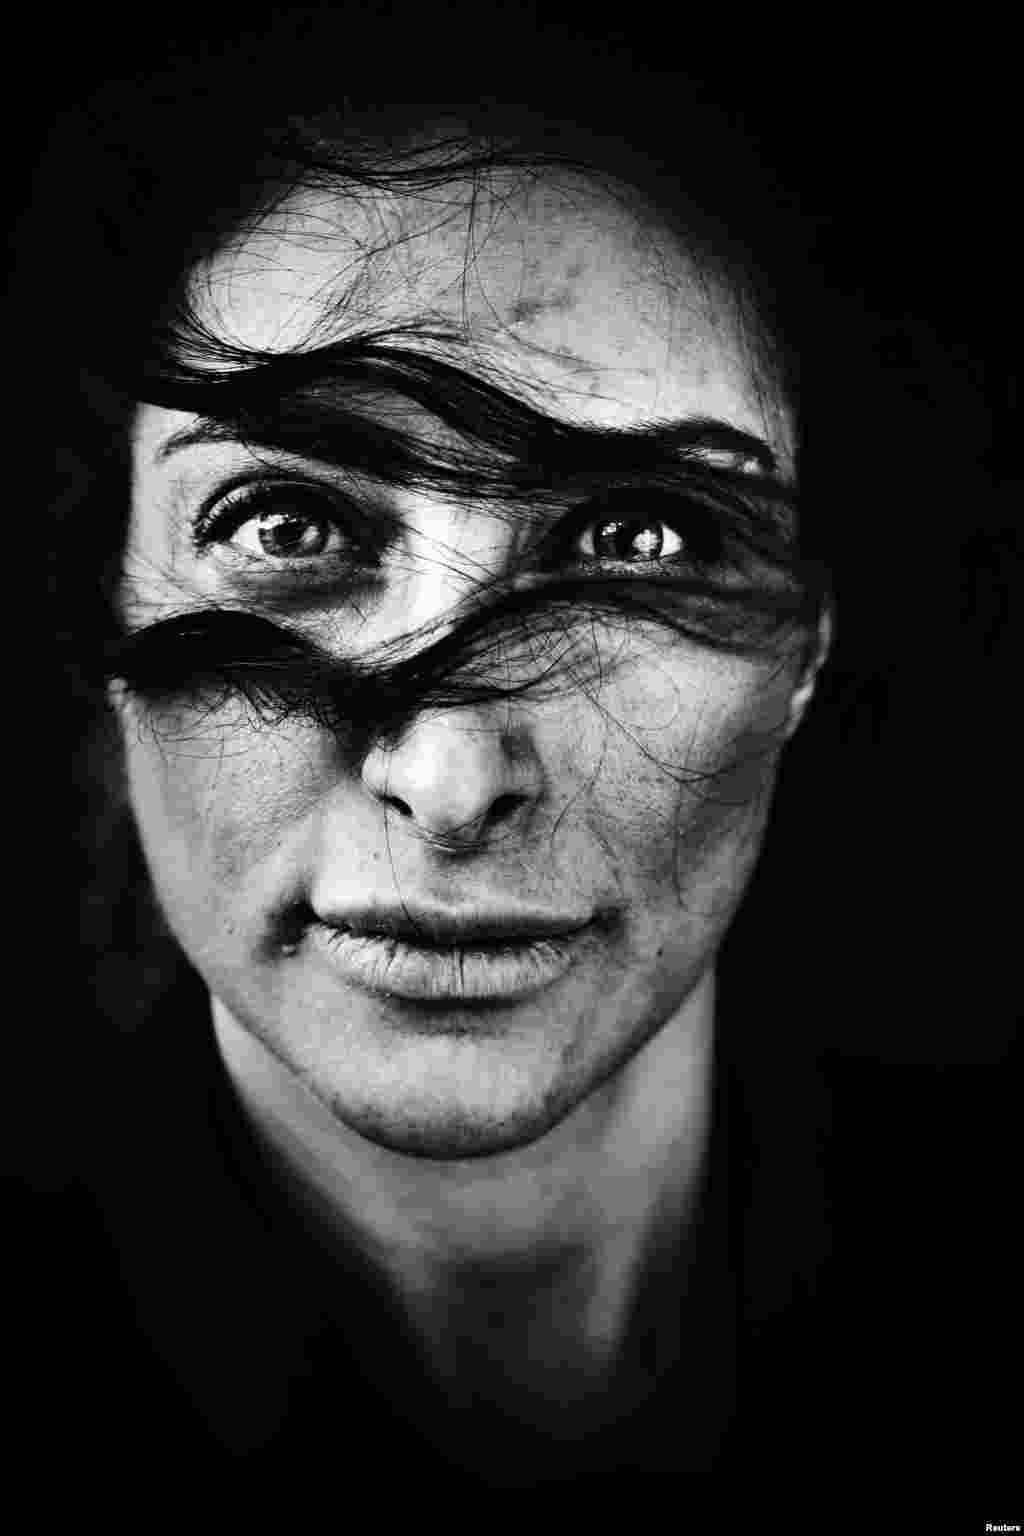 Датчанин Лаерке Посселт стал обладателем приза в категории портретная фотография за портрет датской актрисы иранского происхождения Мелики Мехрабан.